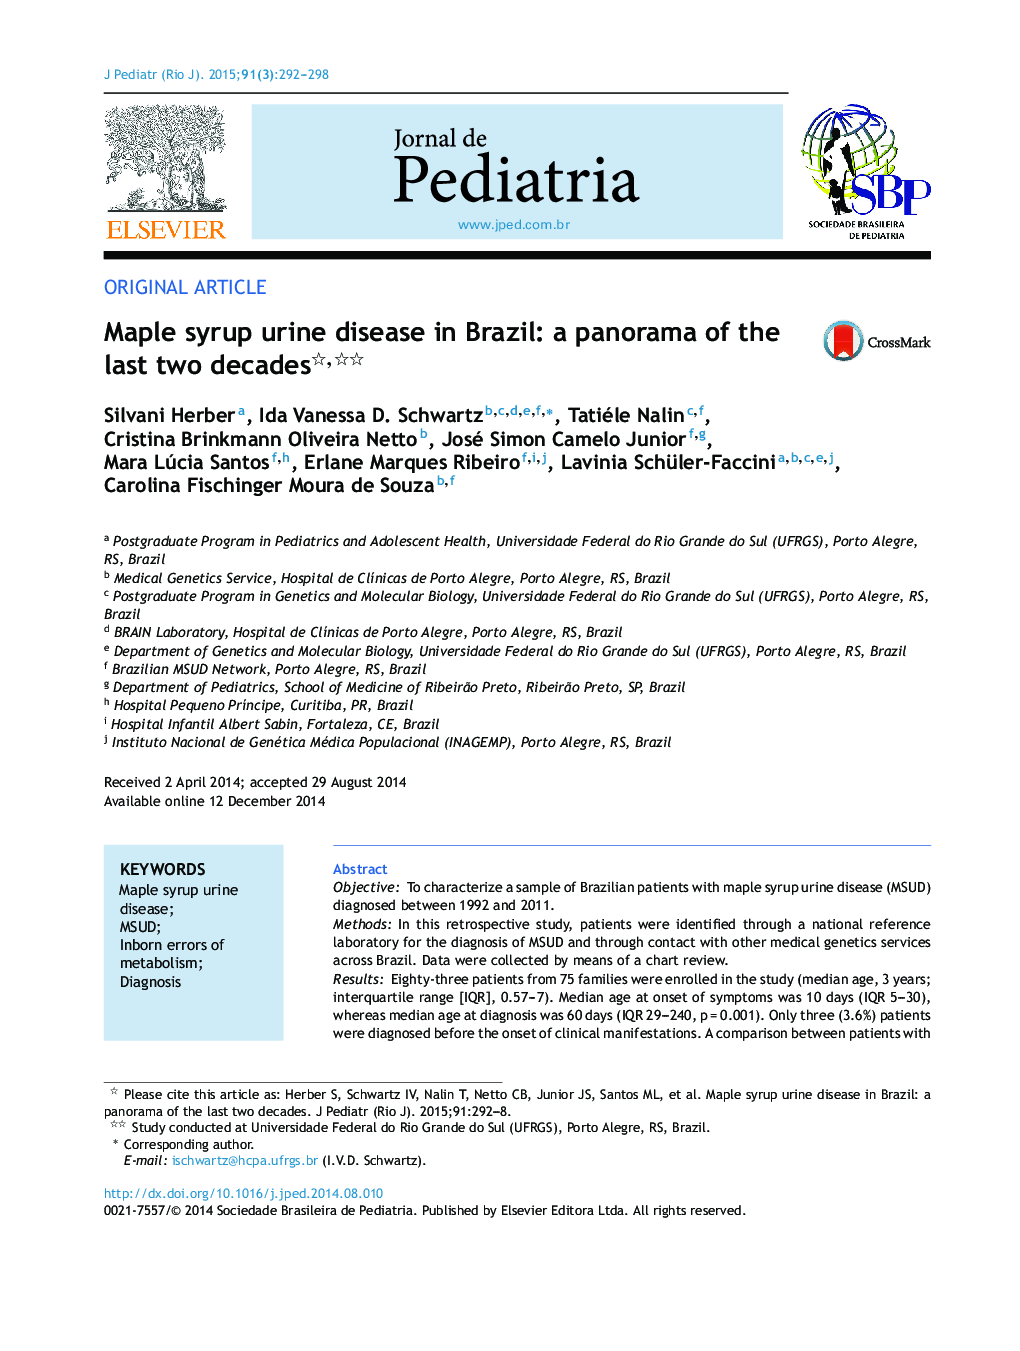 بیماری ادرار شربت افرا در برزیل: چشم انداز دو دهه گذشته 